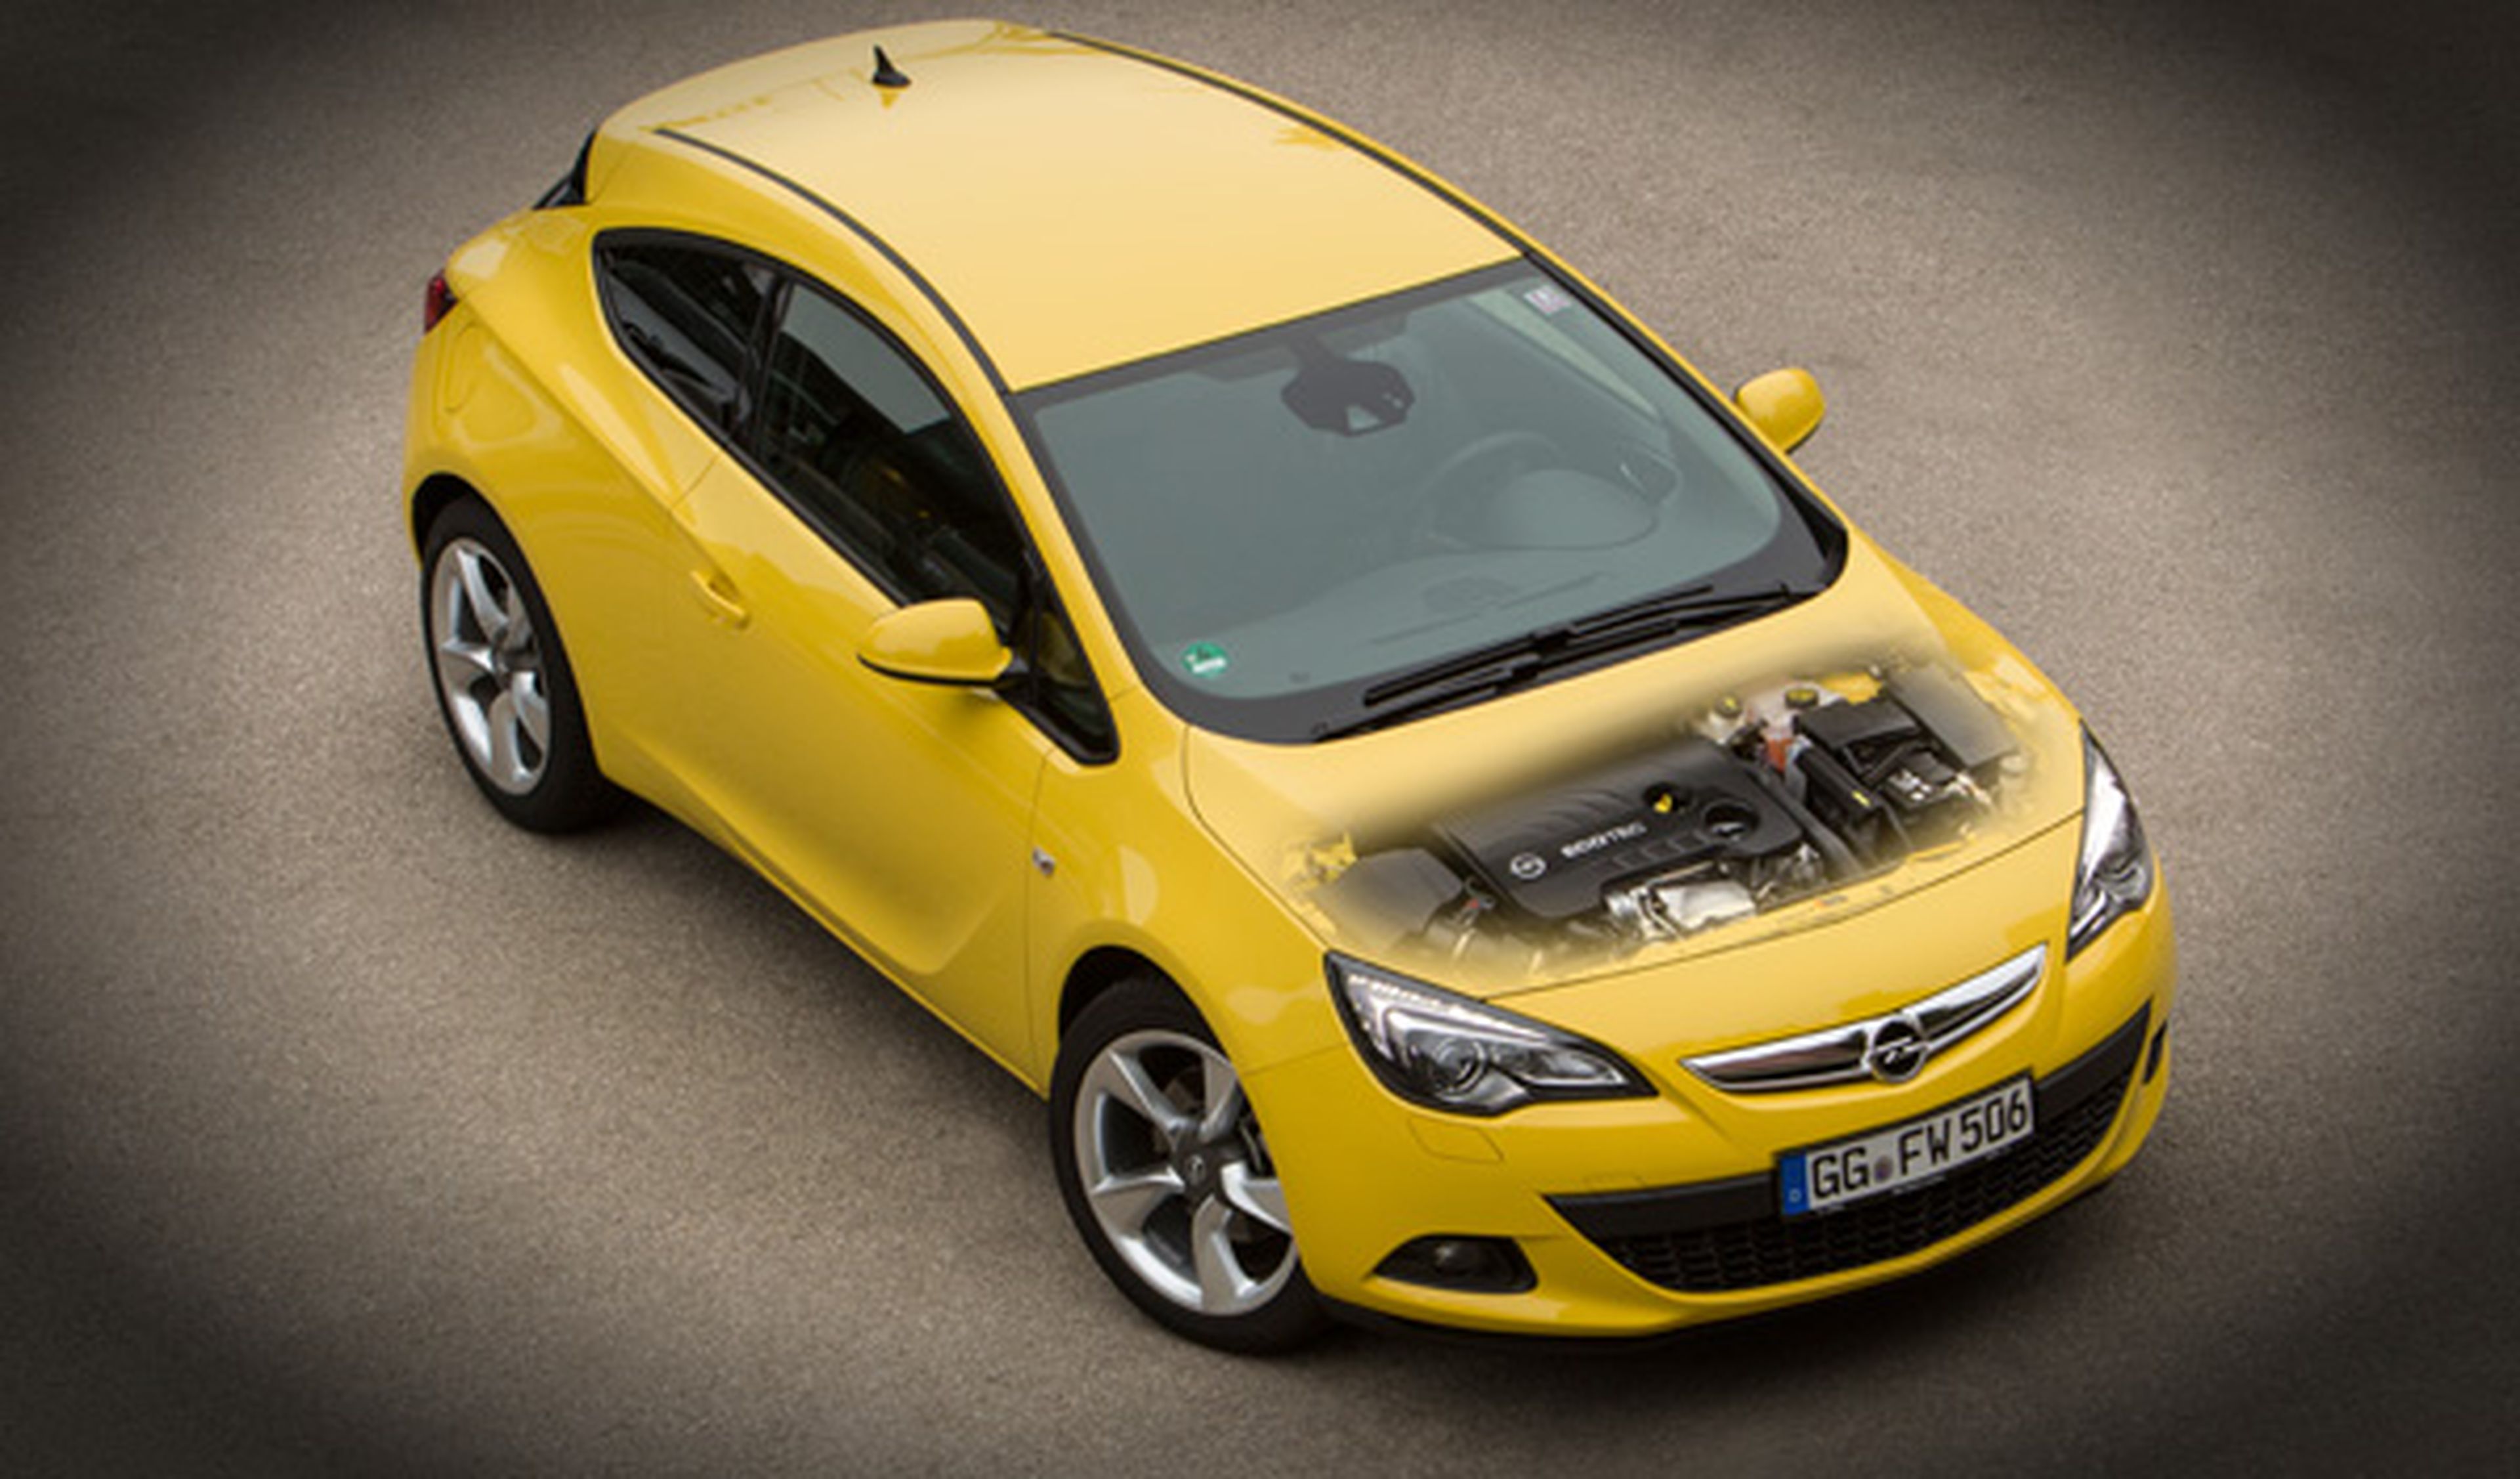 El Opel Astra GTC 1.6 SIDI Turbo 170 CV, suave como la seda